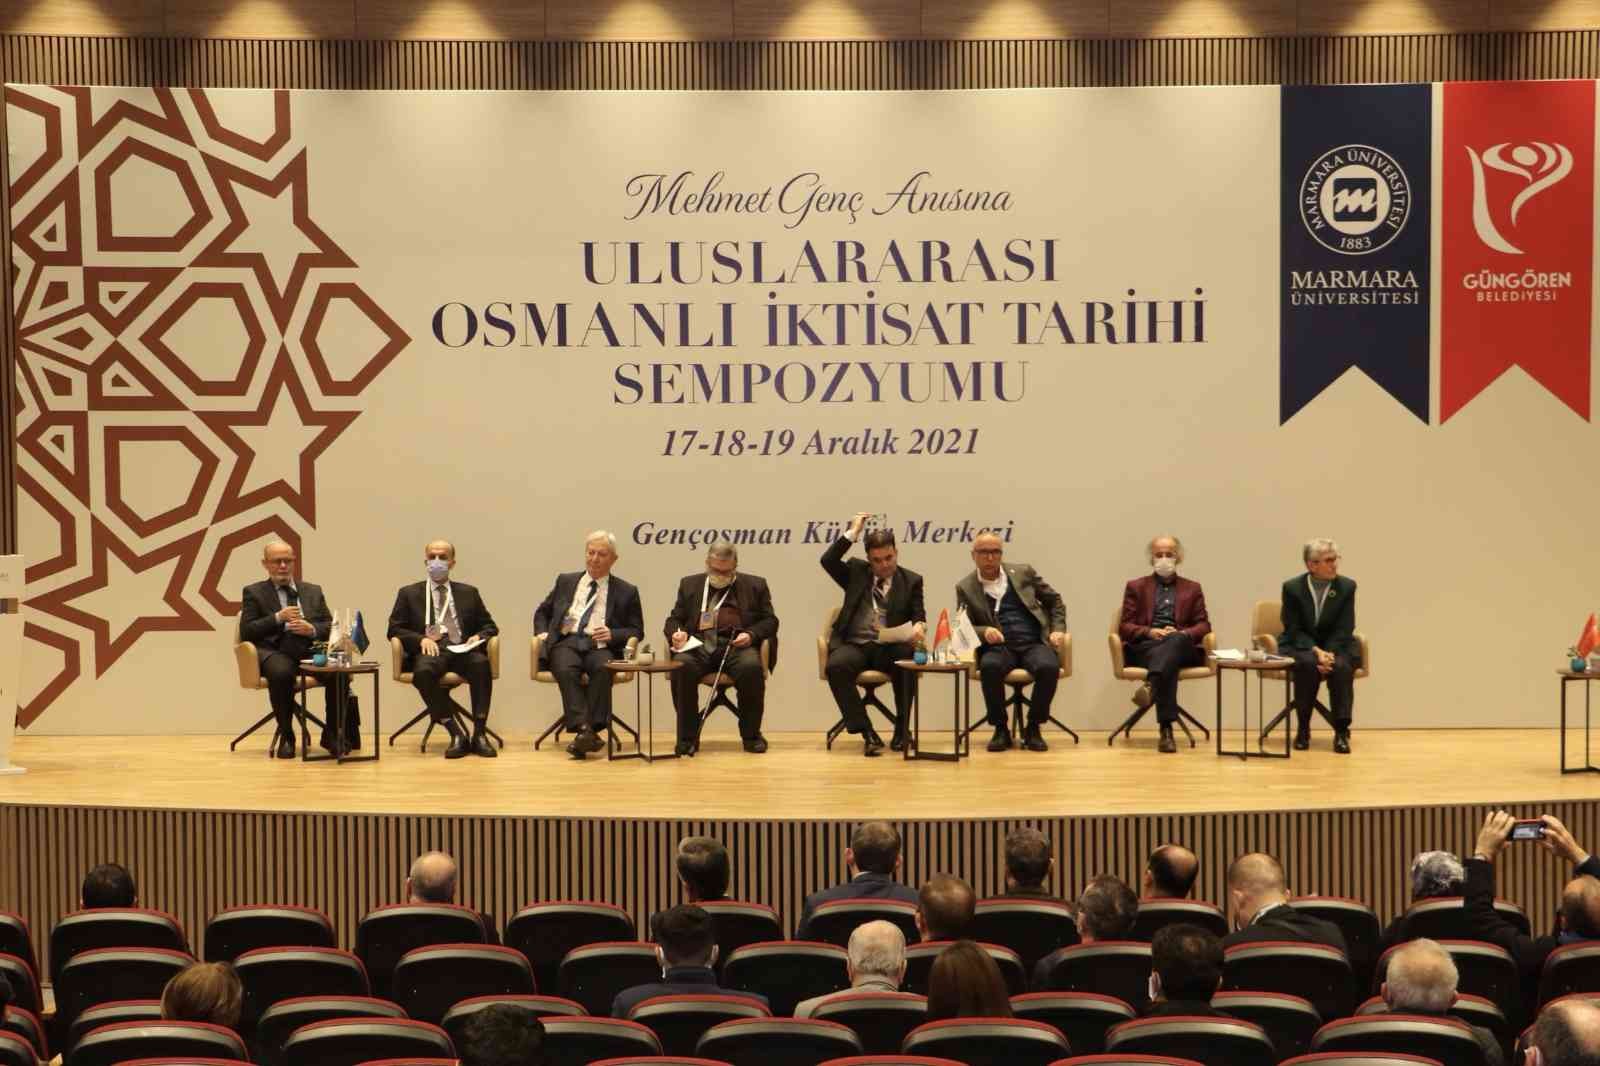 Uluslararası Osmanlı İktisat Tarihi Sempozyumu’nun ilk oturumu yapıldı #istanbul